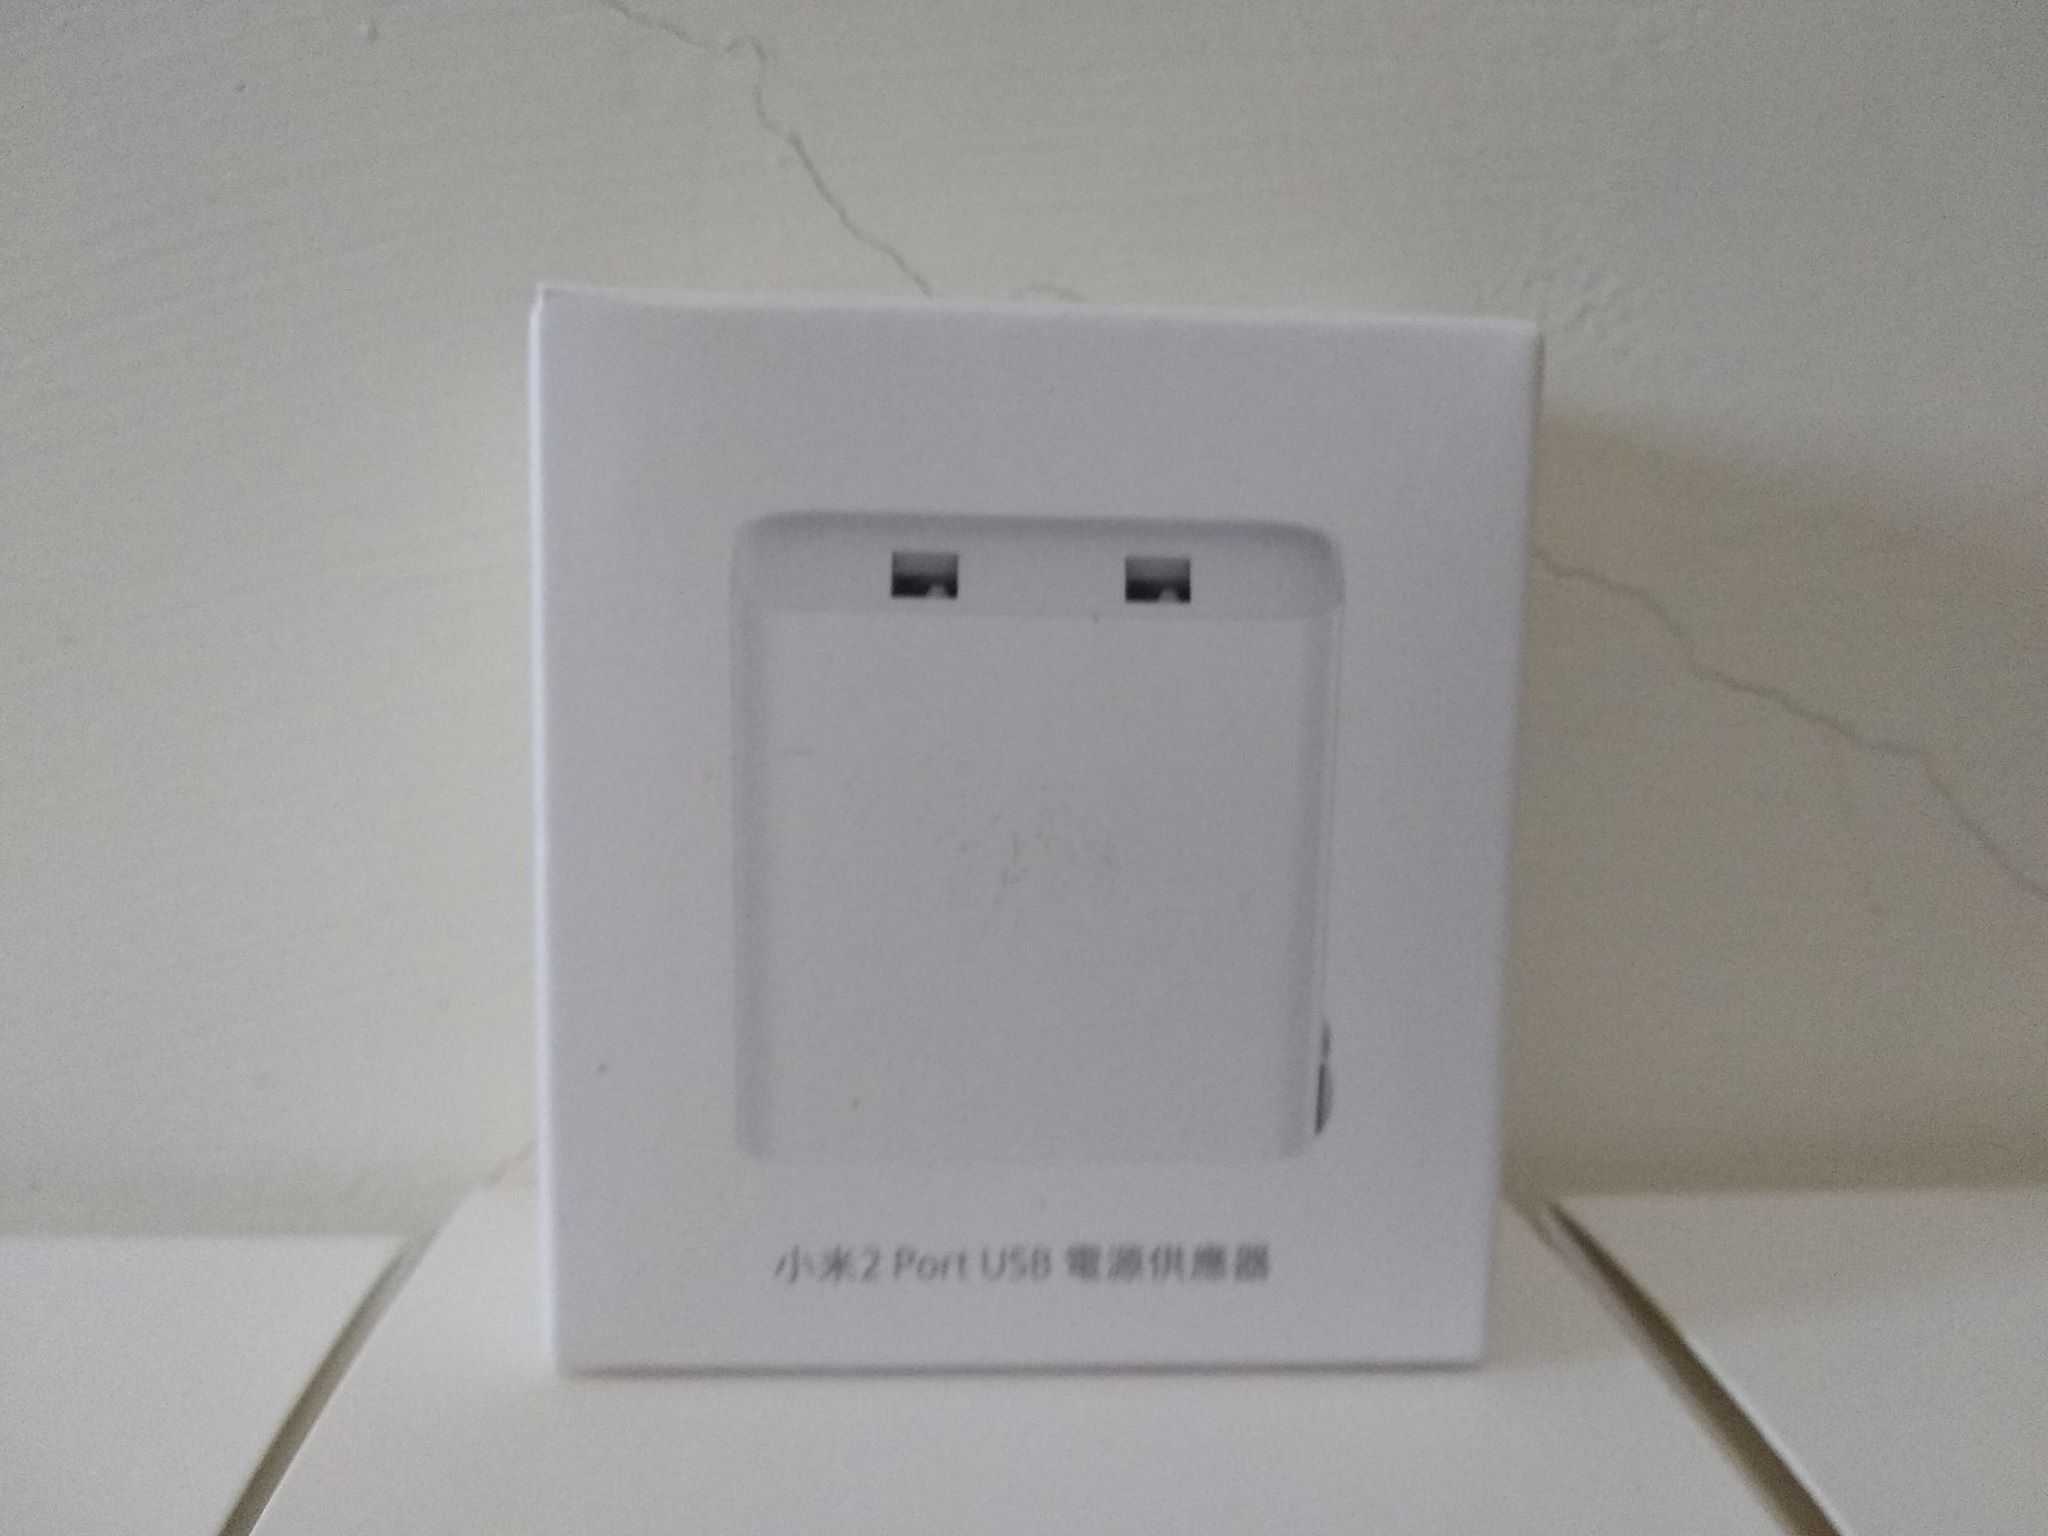 小米2 Port USB 充電器 (台灣小米保固)